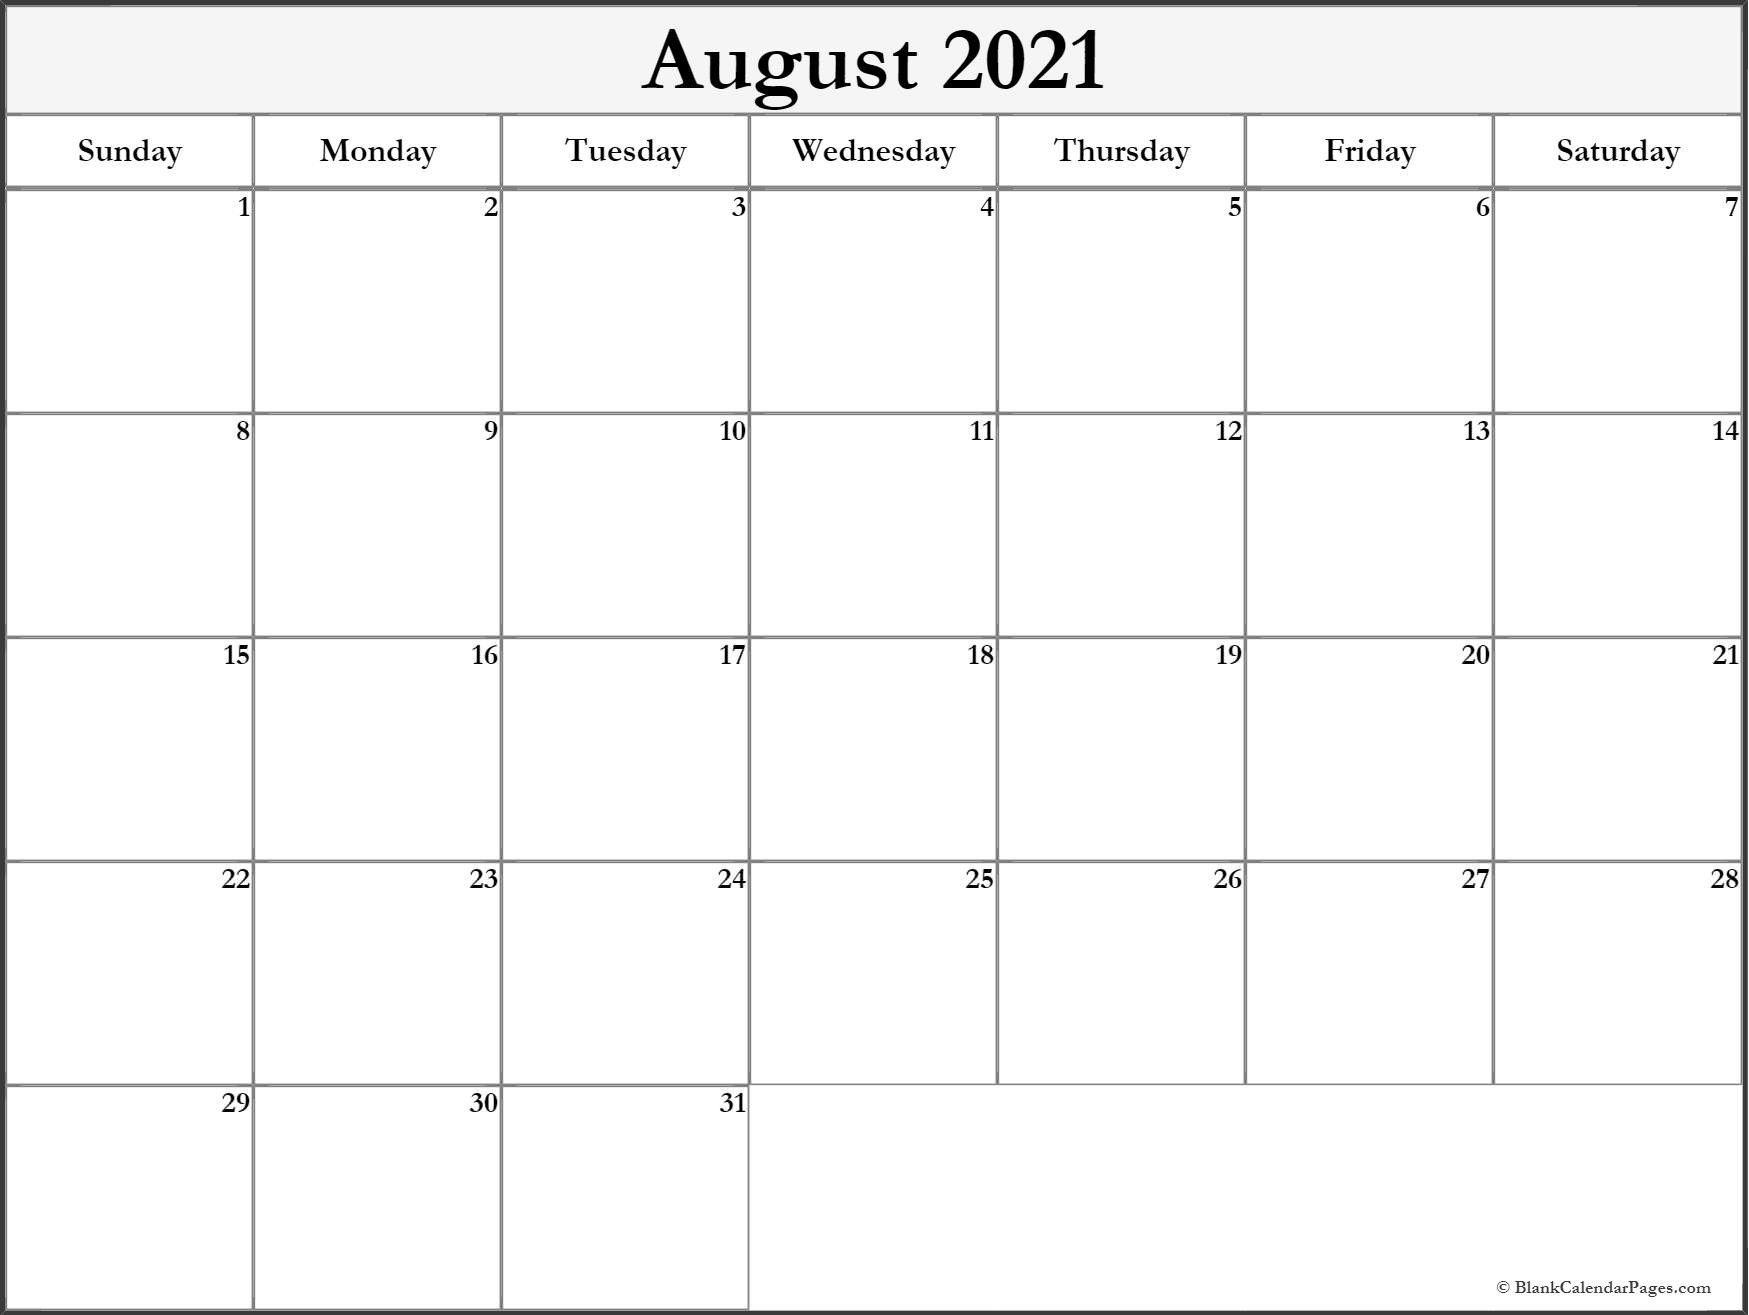 August 2021 Blank Calendar Templates.-Hourly Aug 2021 Calendar